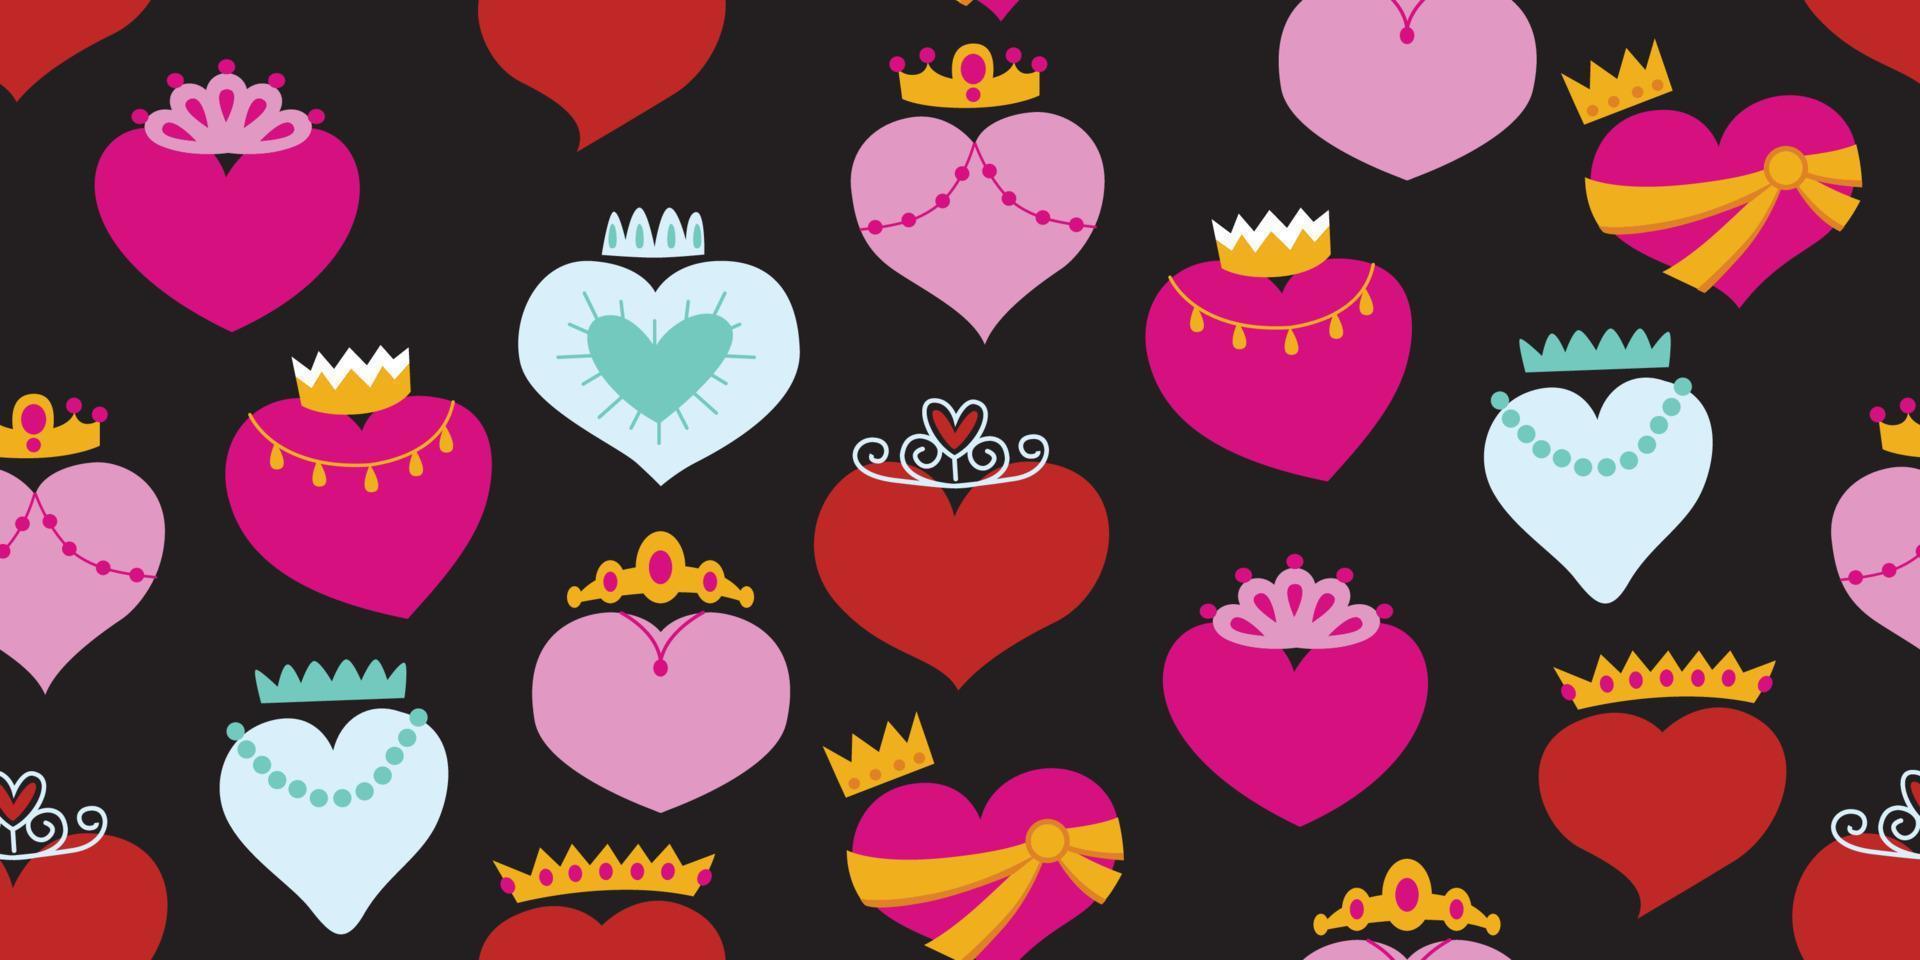 mooi patroon kroon hart ontwerp. koningin van hart. zoet romance gekroond hart patroon koning en koningin hart voor decoreren de bruiloft kaart voor Valentijnsdag dag en liefde verhaal concept.zwart patroon vector